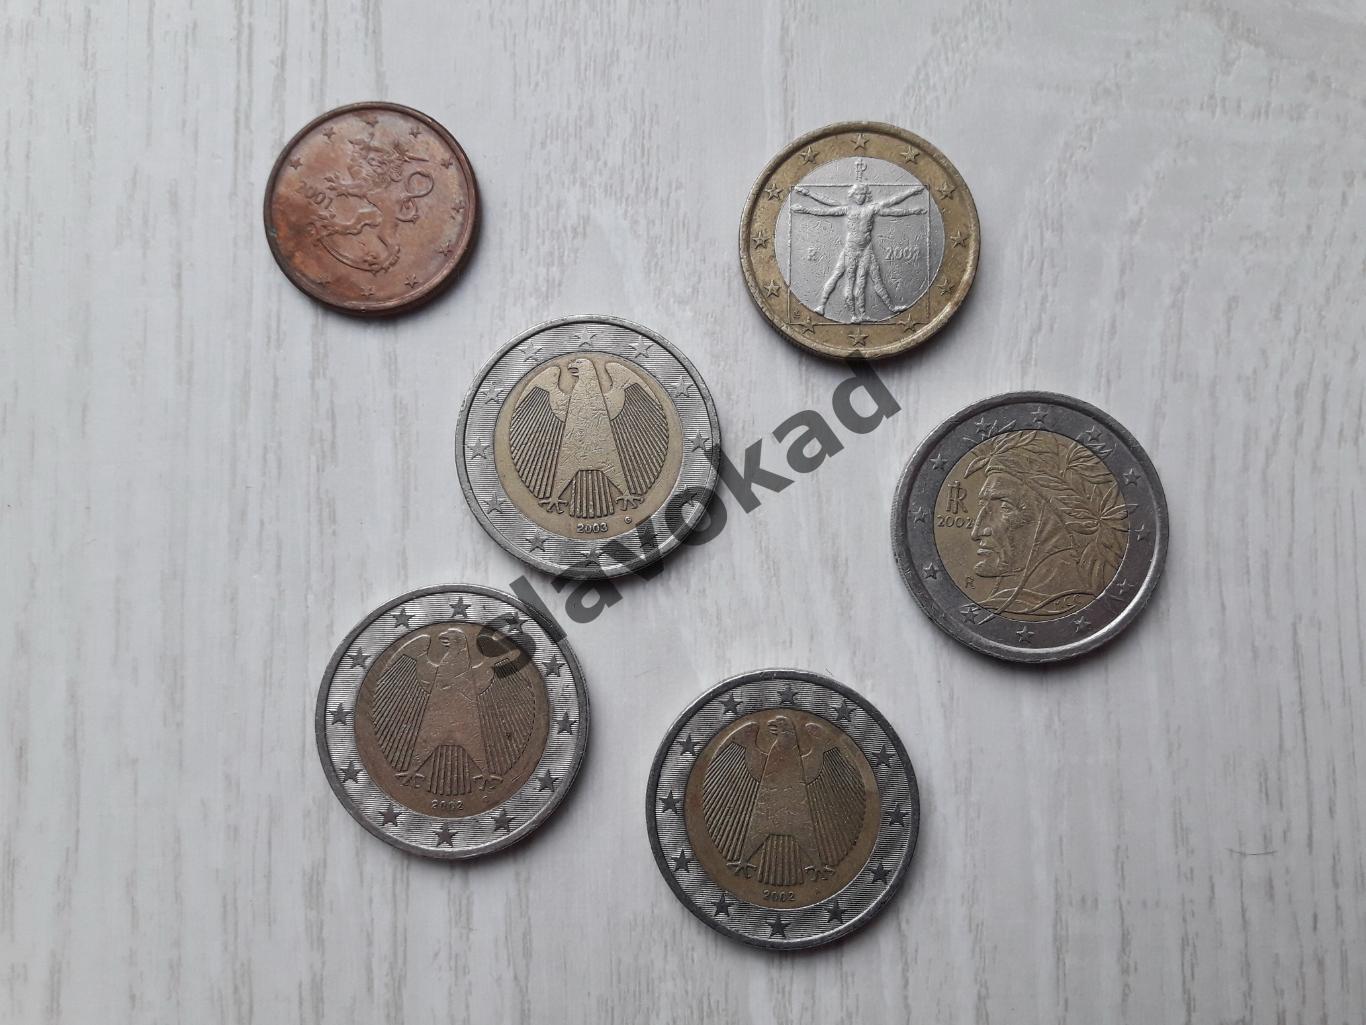 Коллекция из 6 монет - 2 евро (4 штуки), 1 евро (1 штука), 5 центов (1 штука) 1